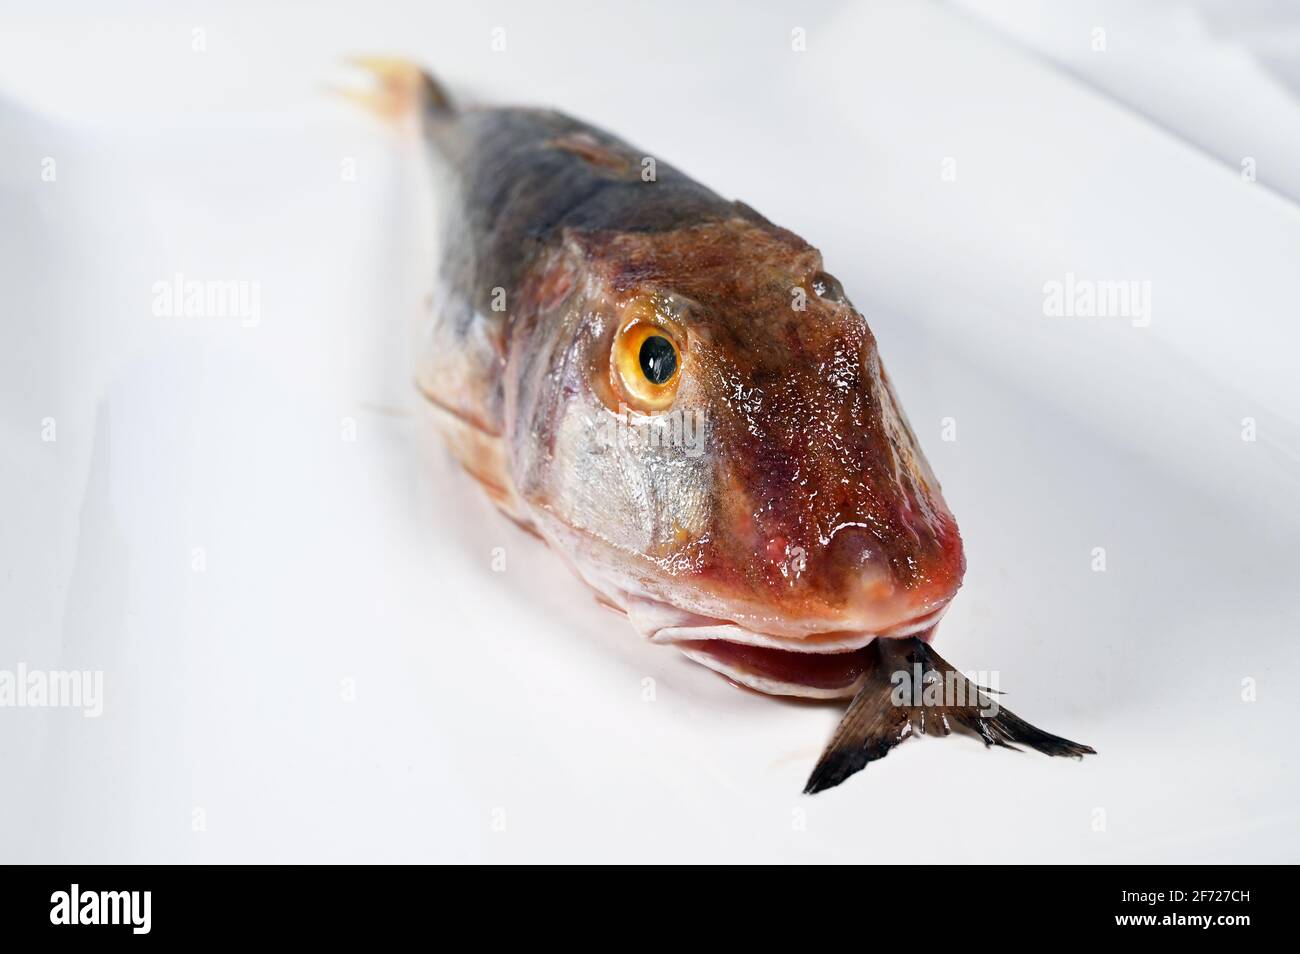 Tub Gurnard Fish Stock Photo